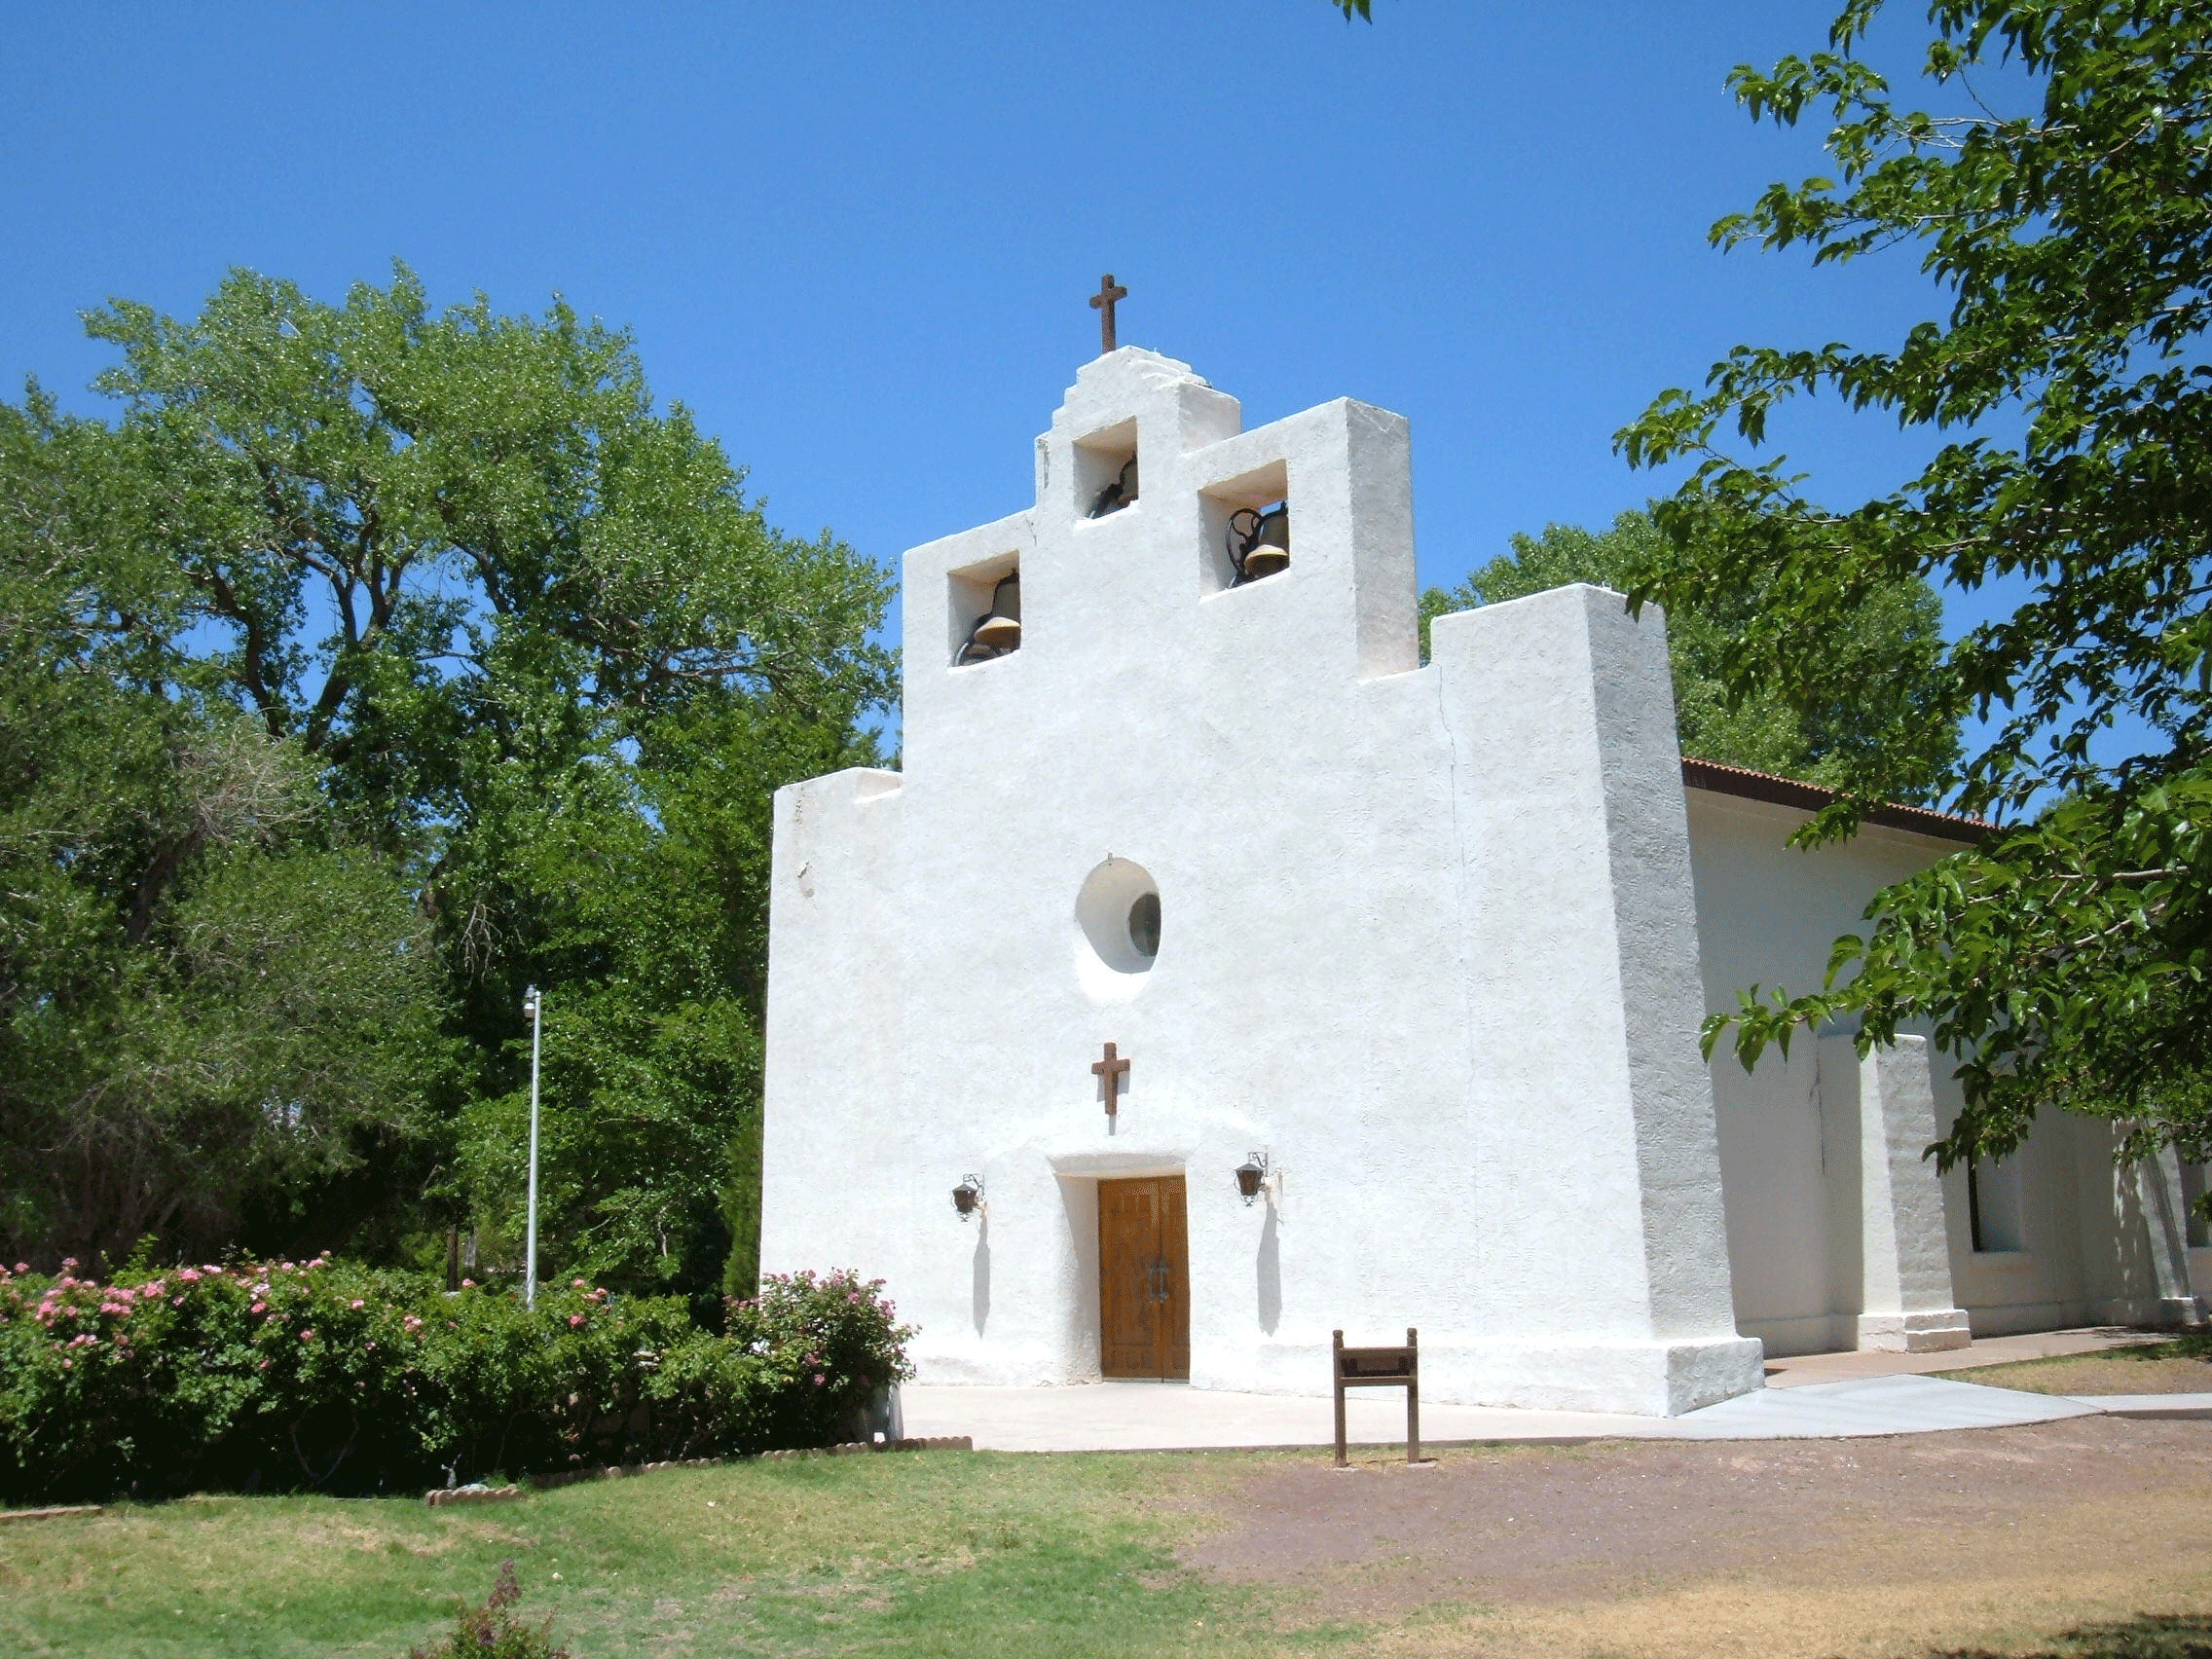 St. Francis Paula Tularosa, New Mexico